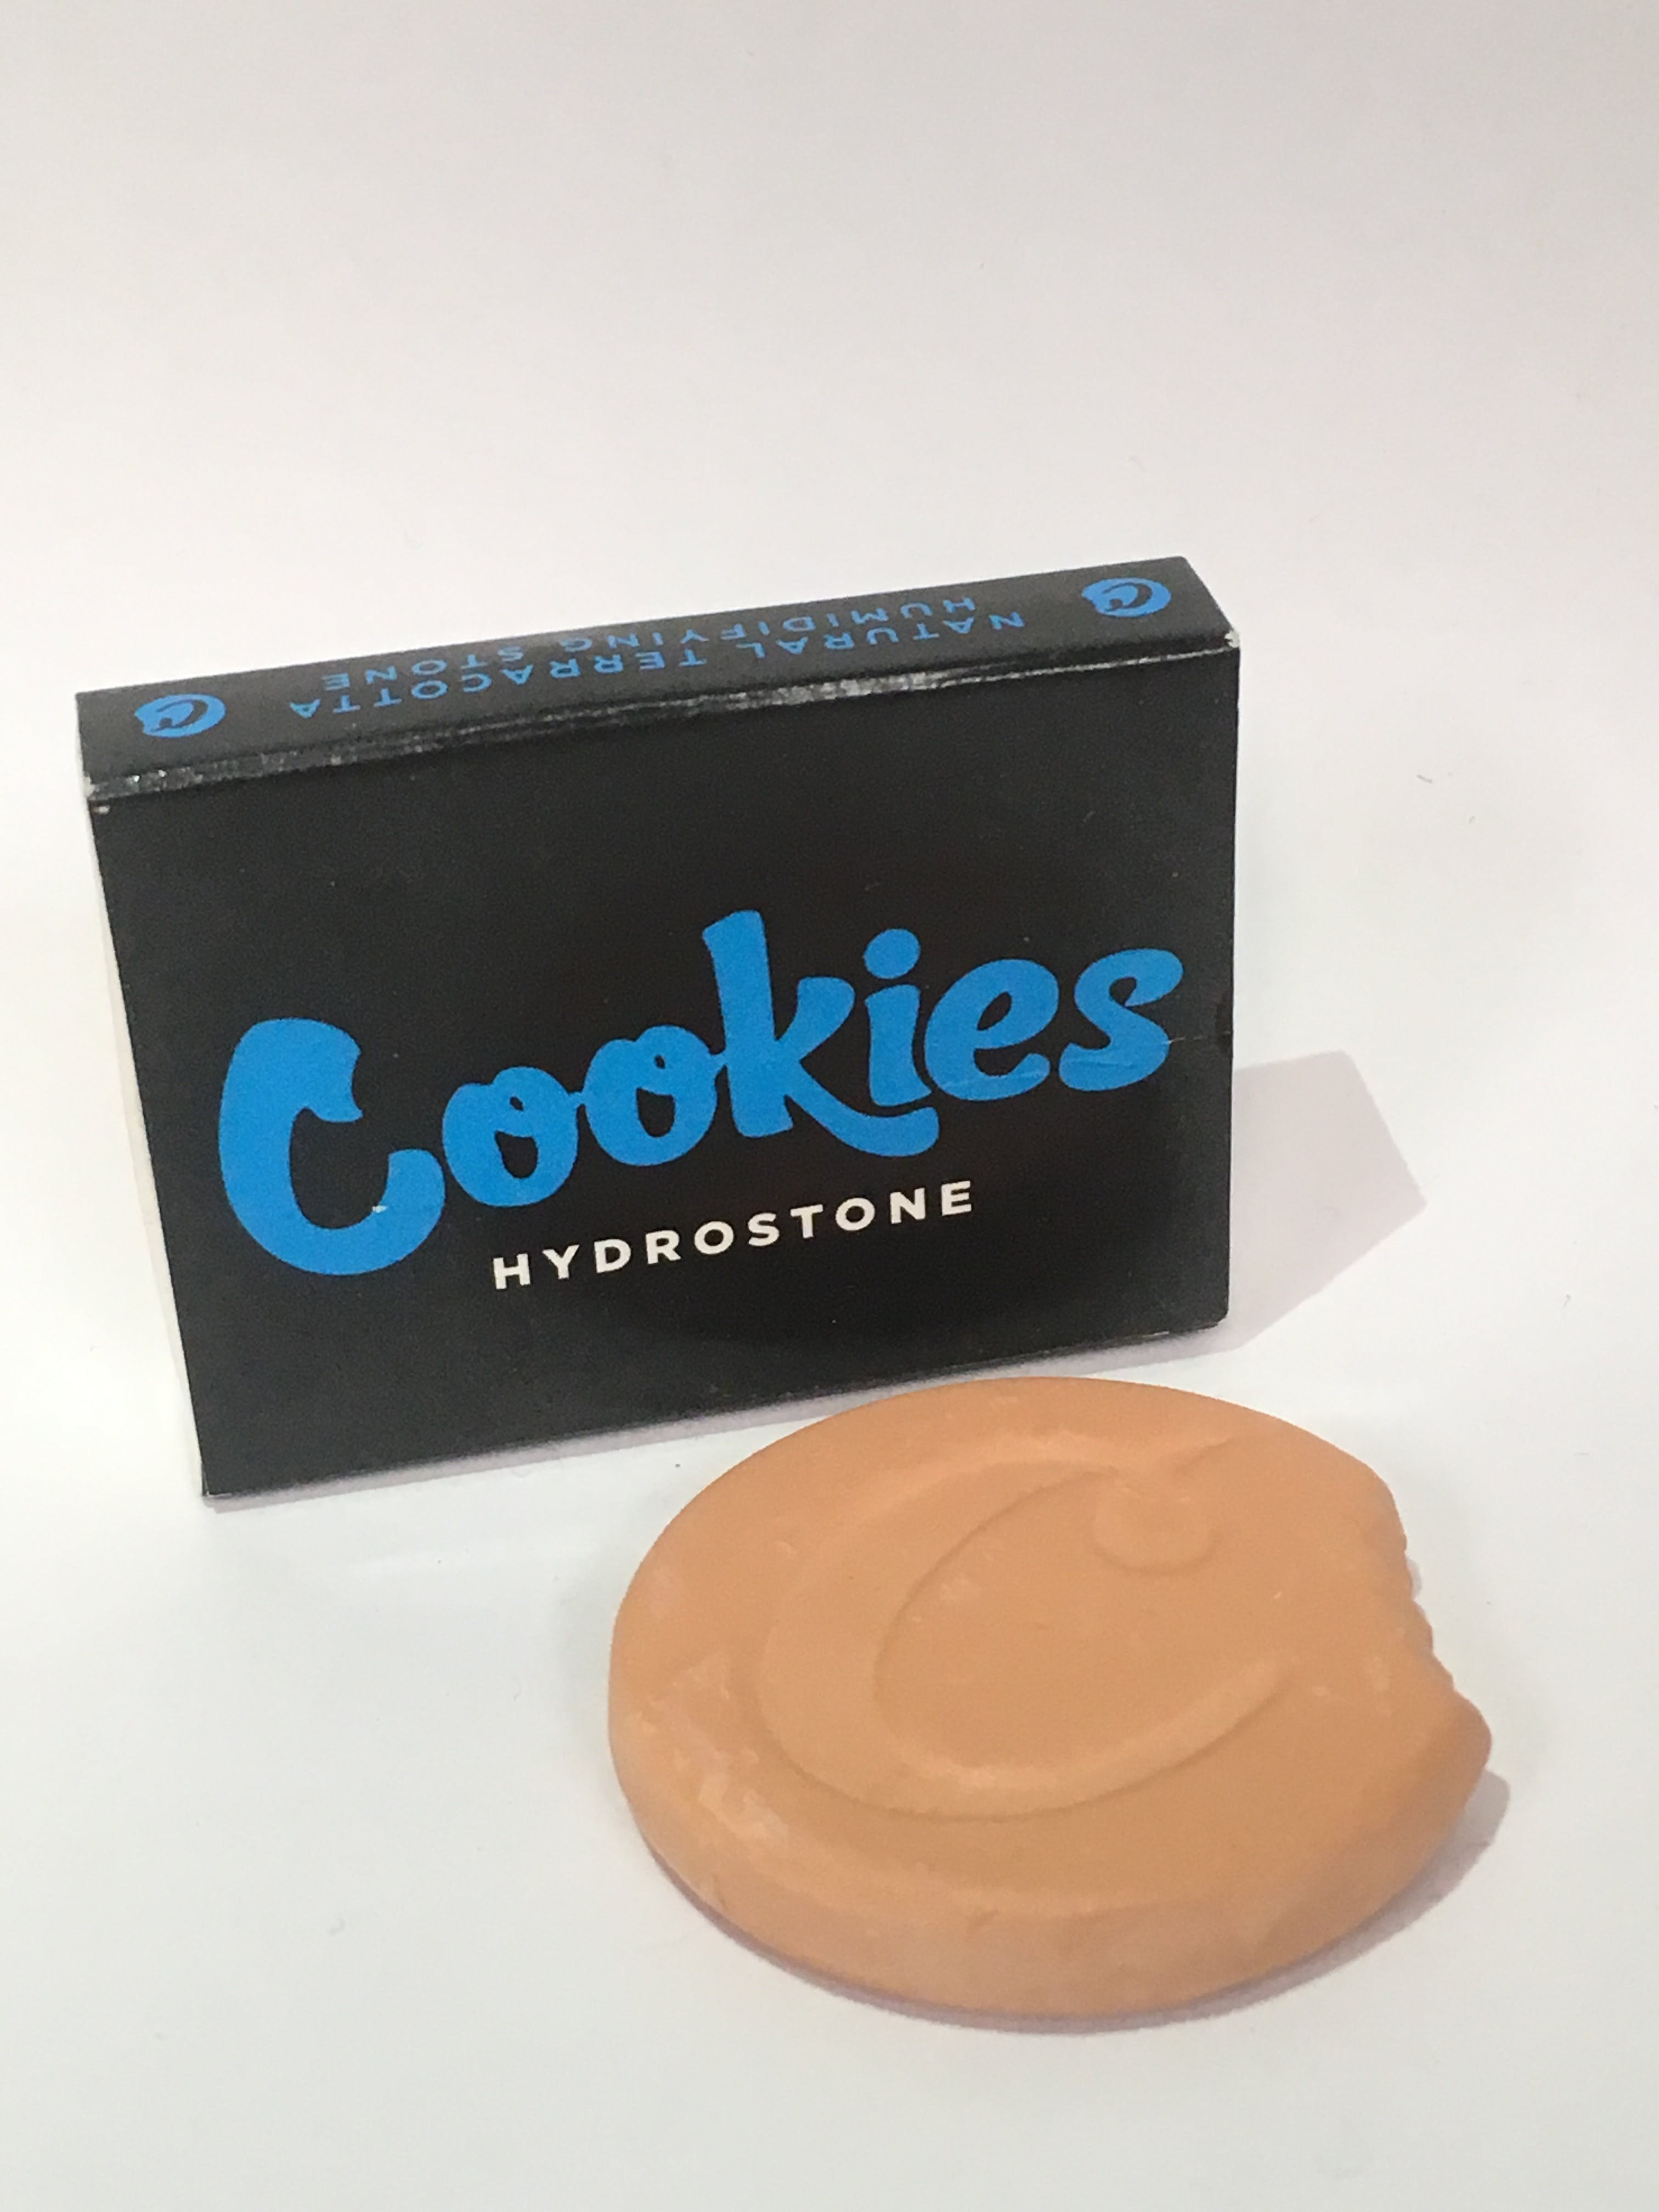 gear-cookies-hydrostone